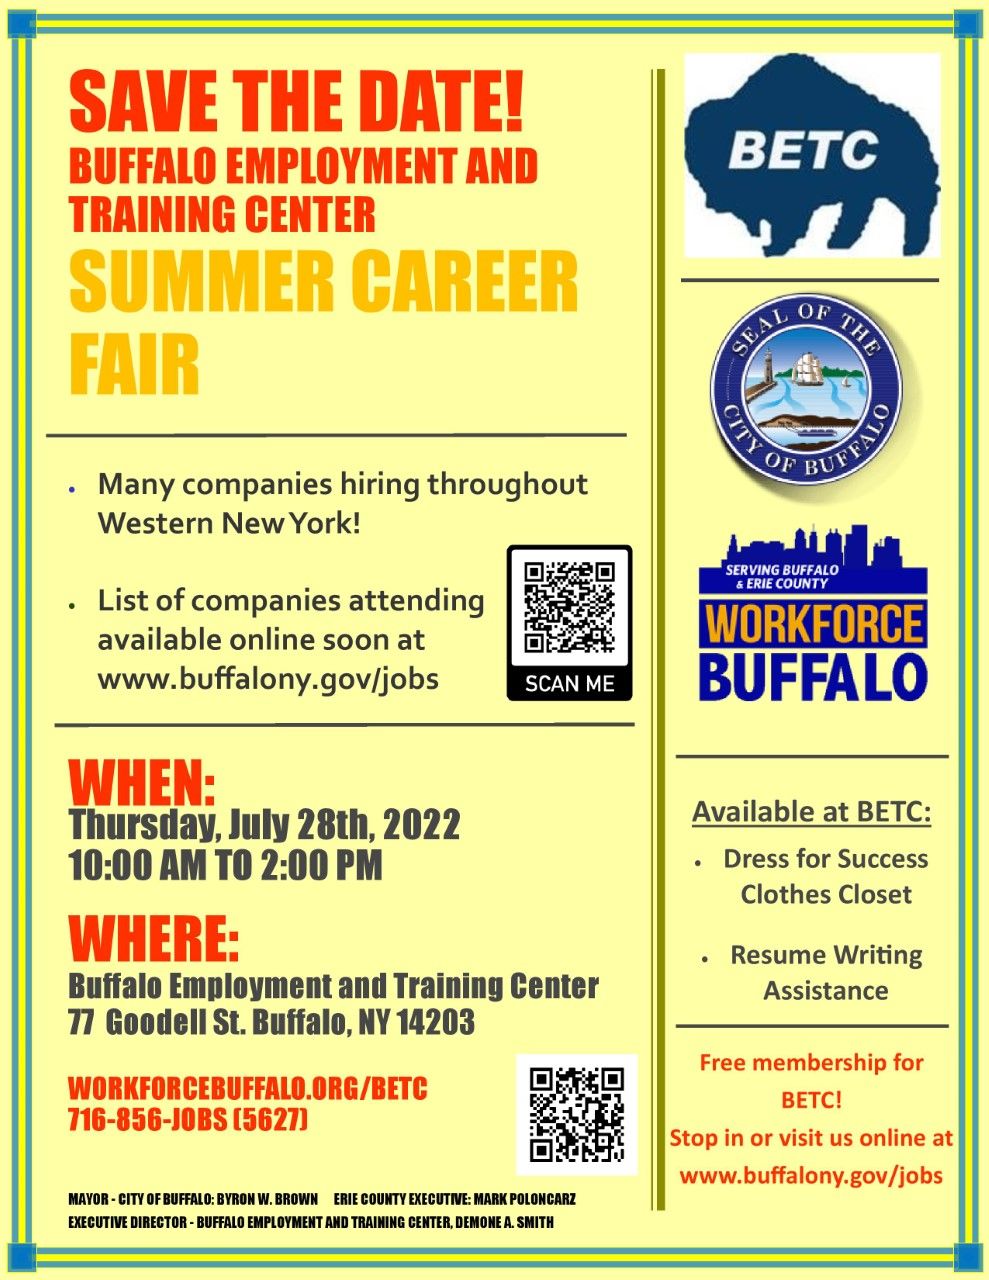 jobs hiring immediately buffalo ny